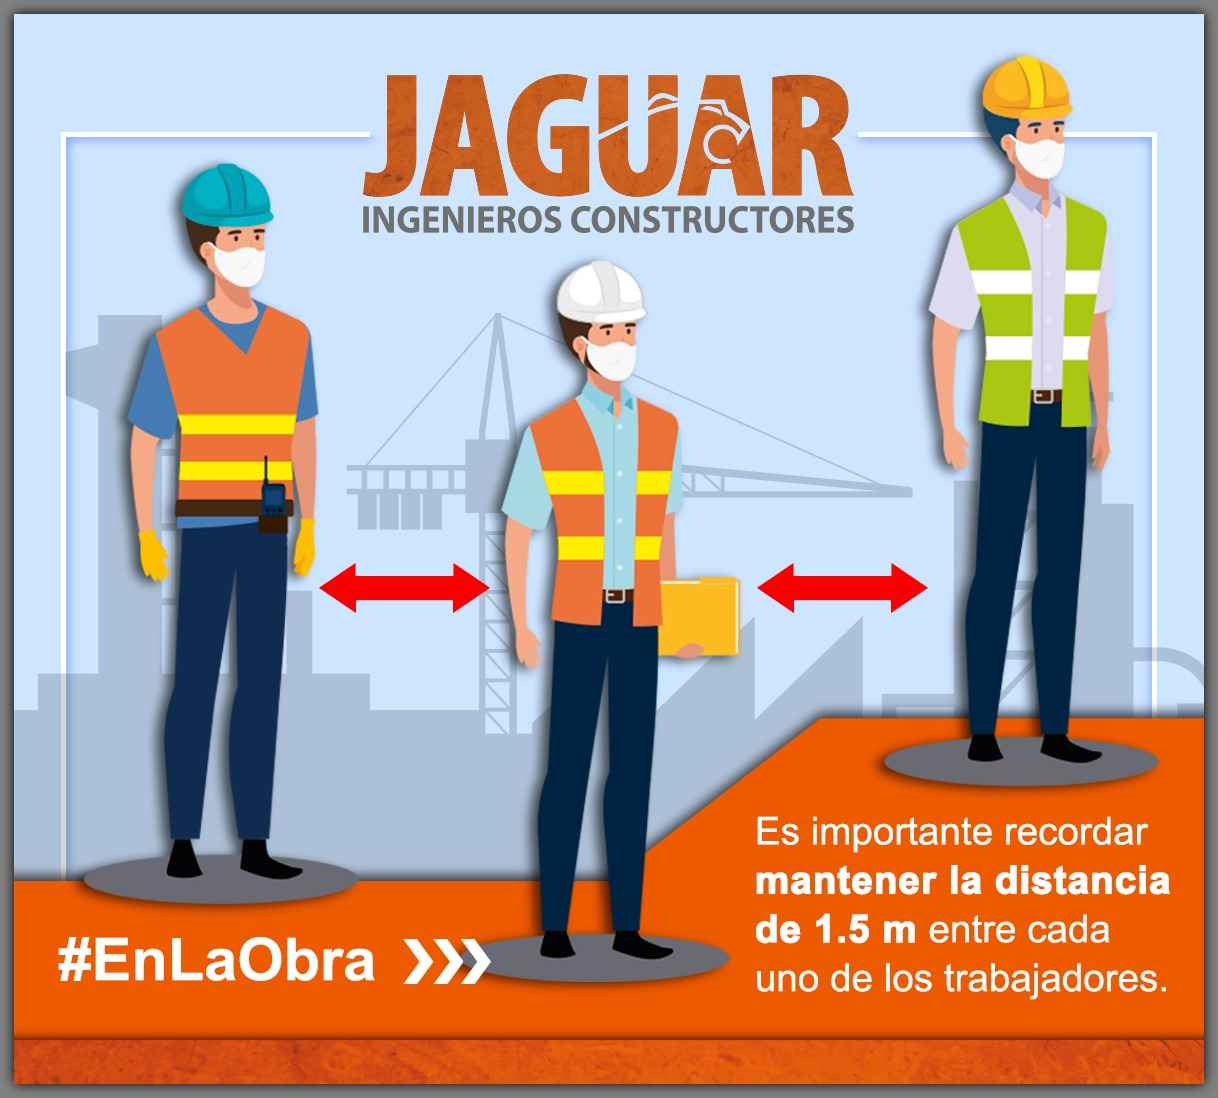 jaguar-ingenieros-constructores-colabora-por-una-cultura-sanitaria-permanente